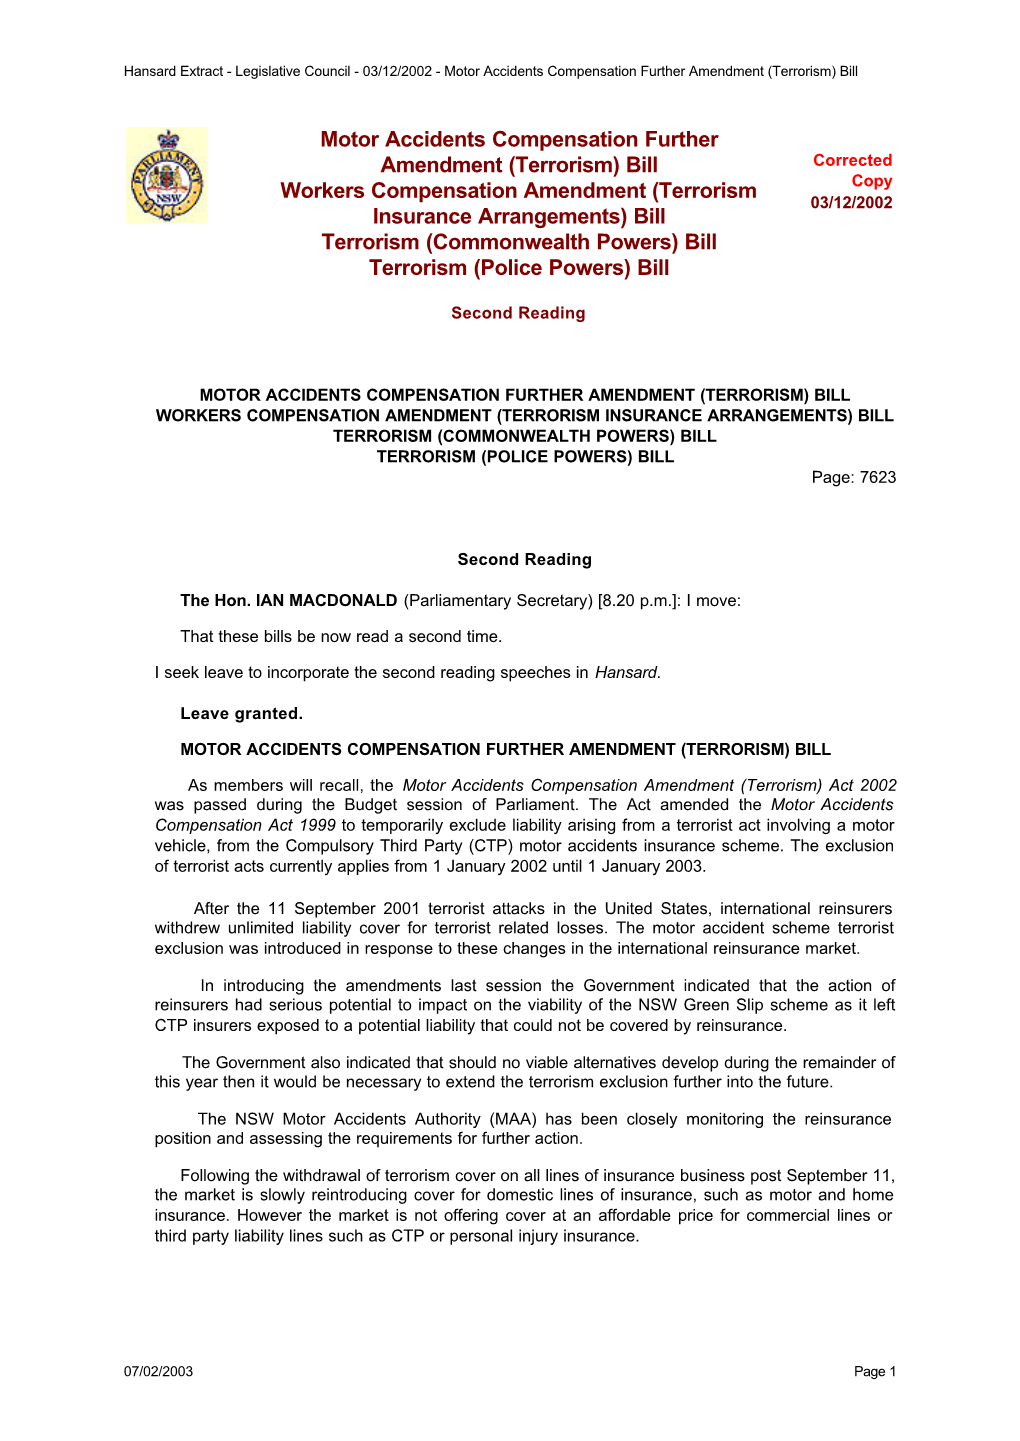 Legislative Council - 03/12/2002 - Motor Accidents Compensation Further Amendment (Terrorism) Bill